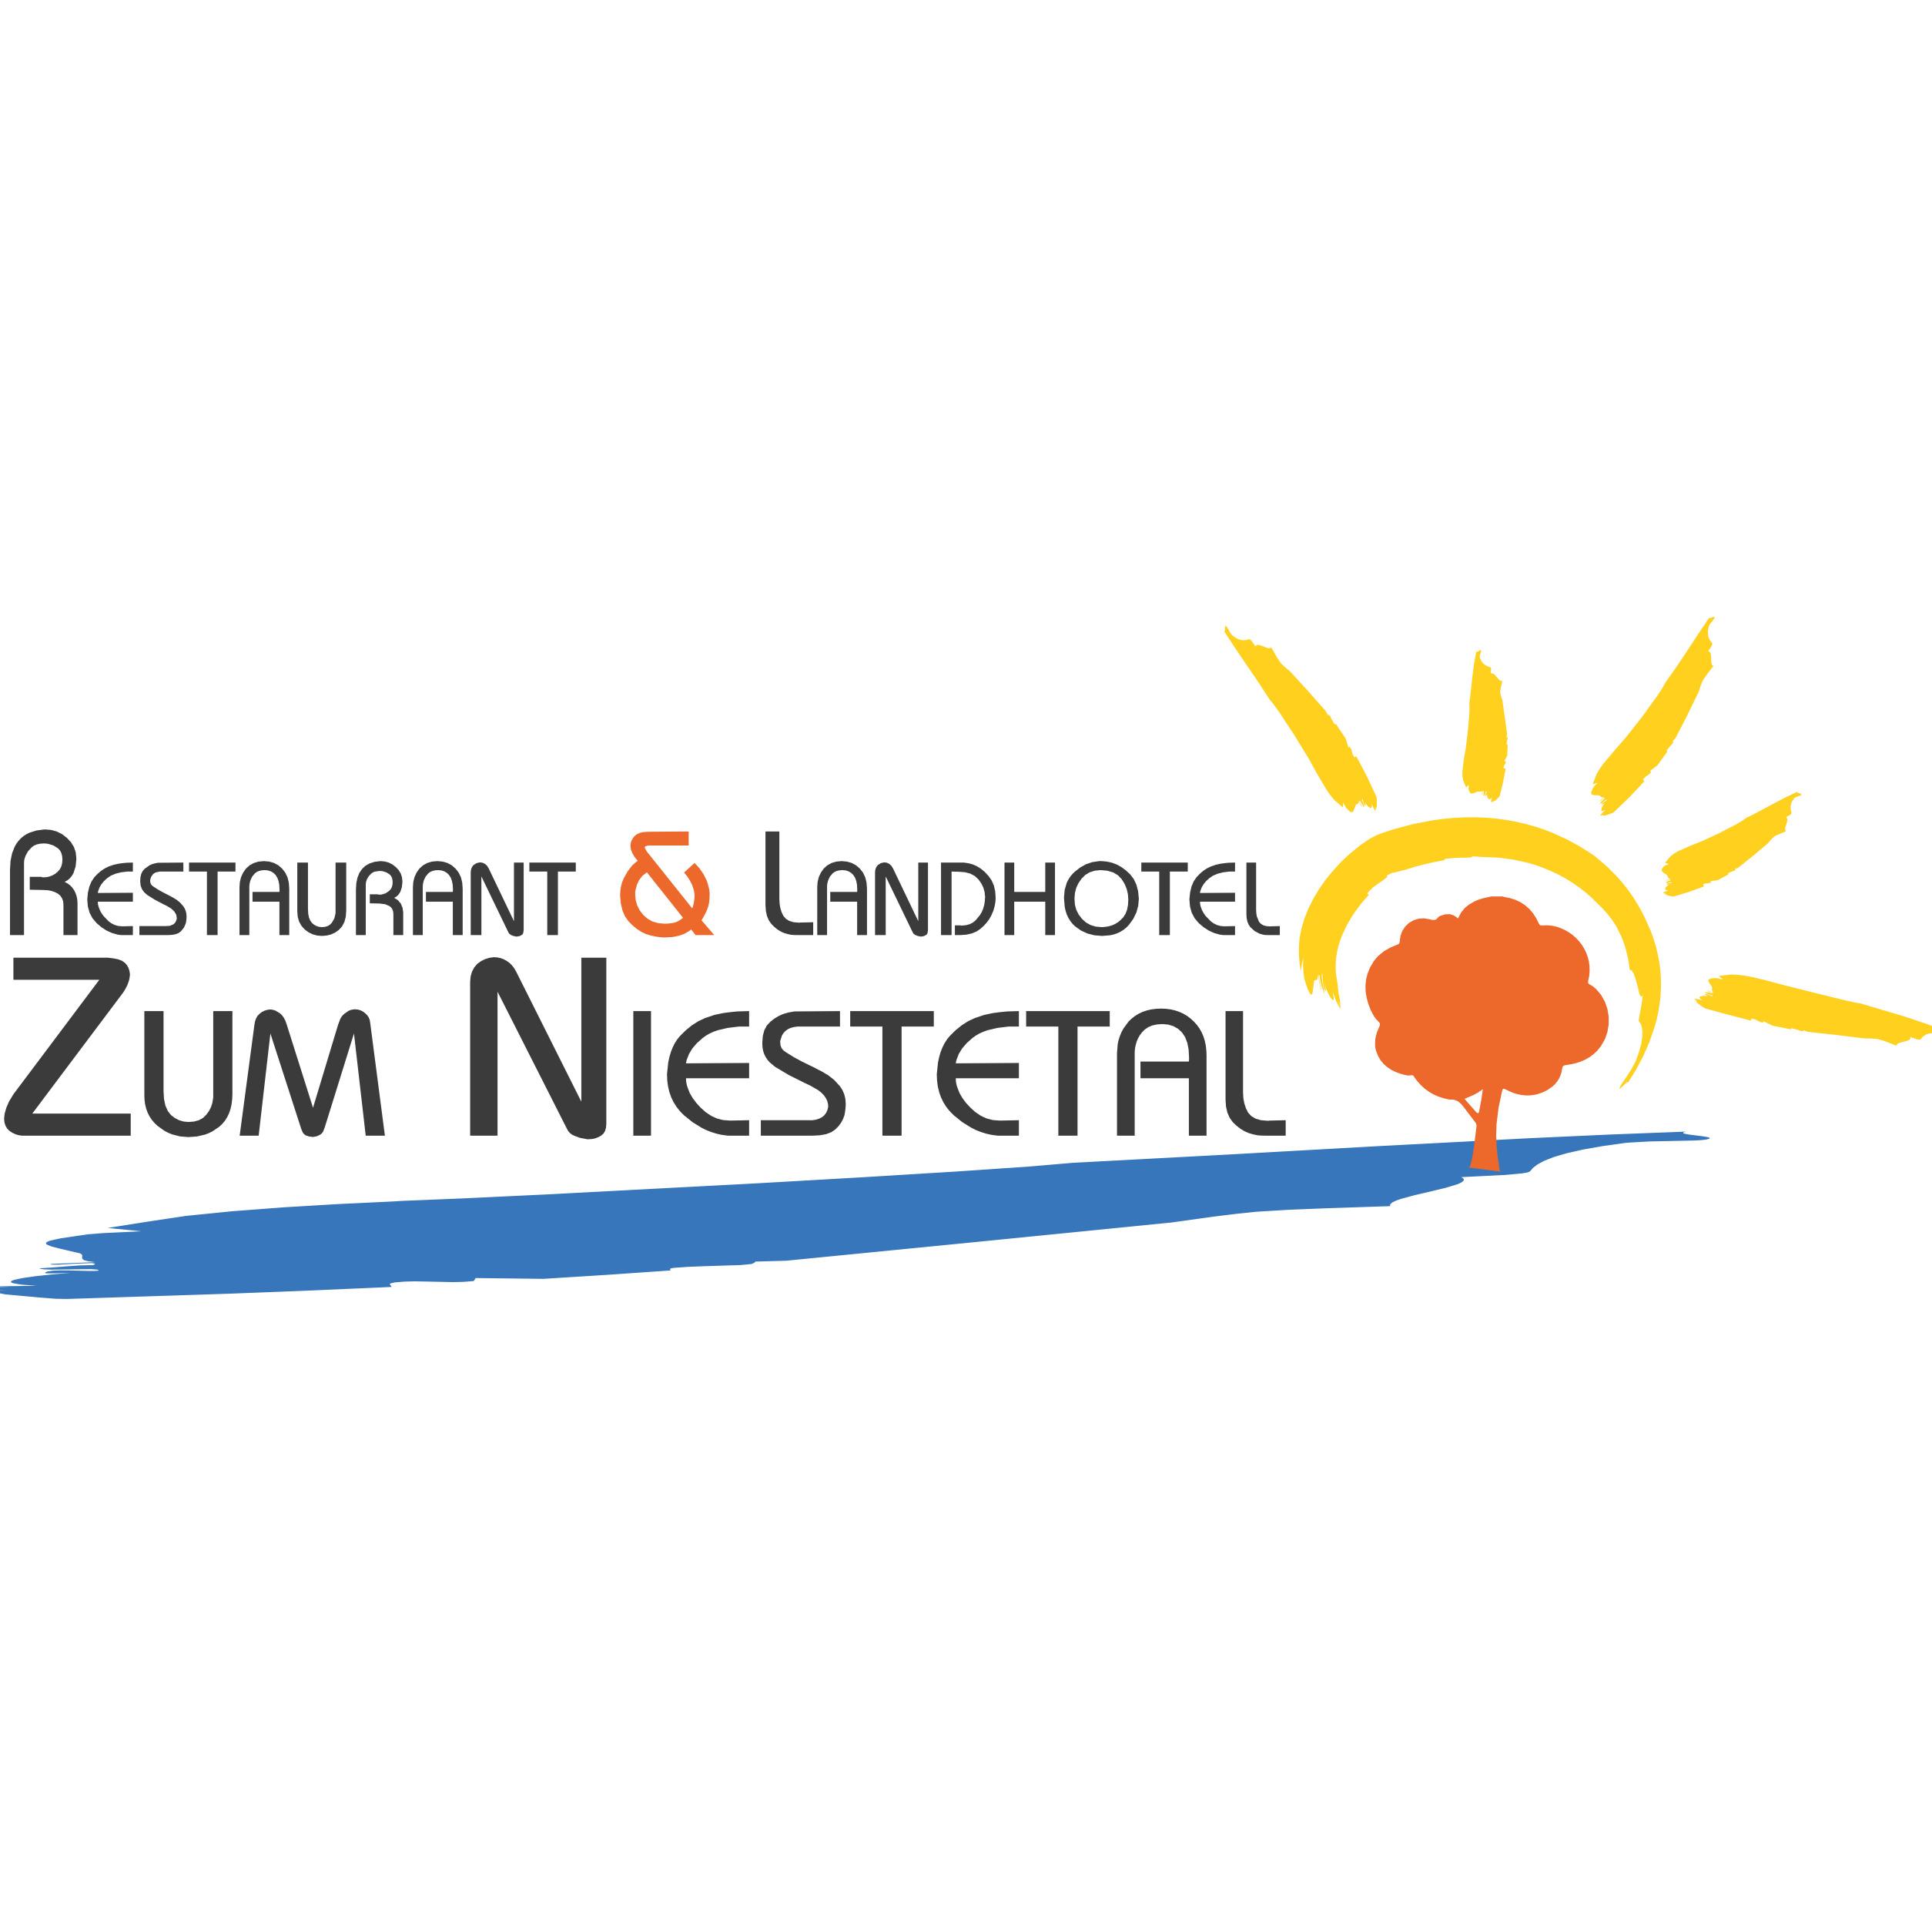 Restaurant und Landhotel Zum Niestetal in Niestetal